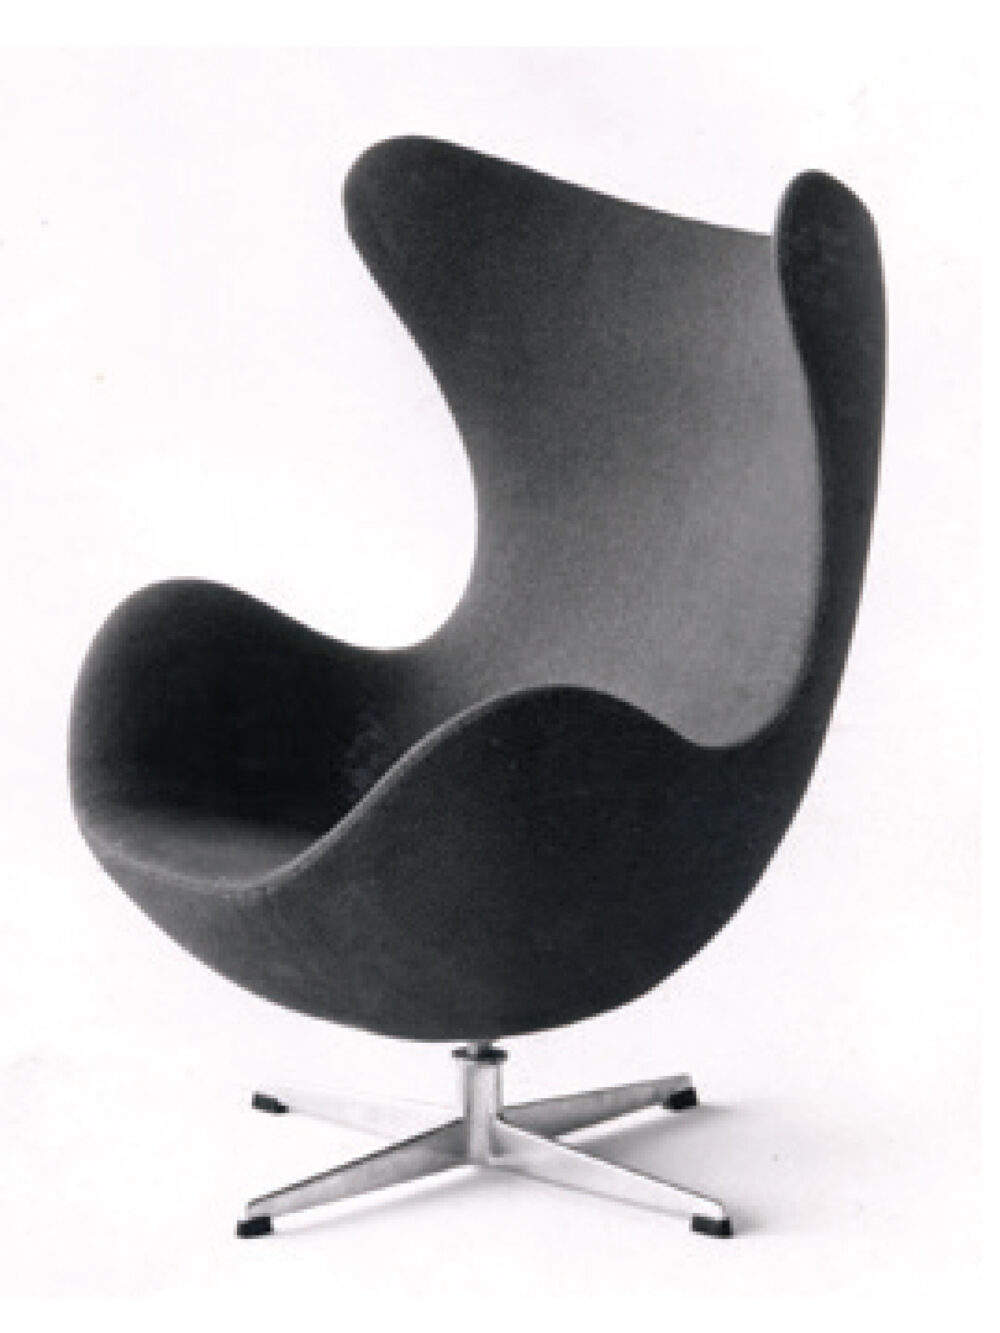 Der Egg™ Sessel von Arne Jacobsen 1958